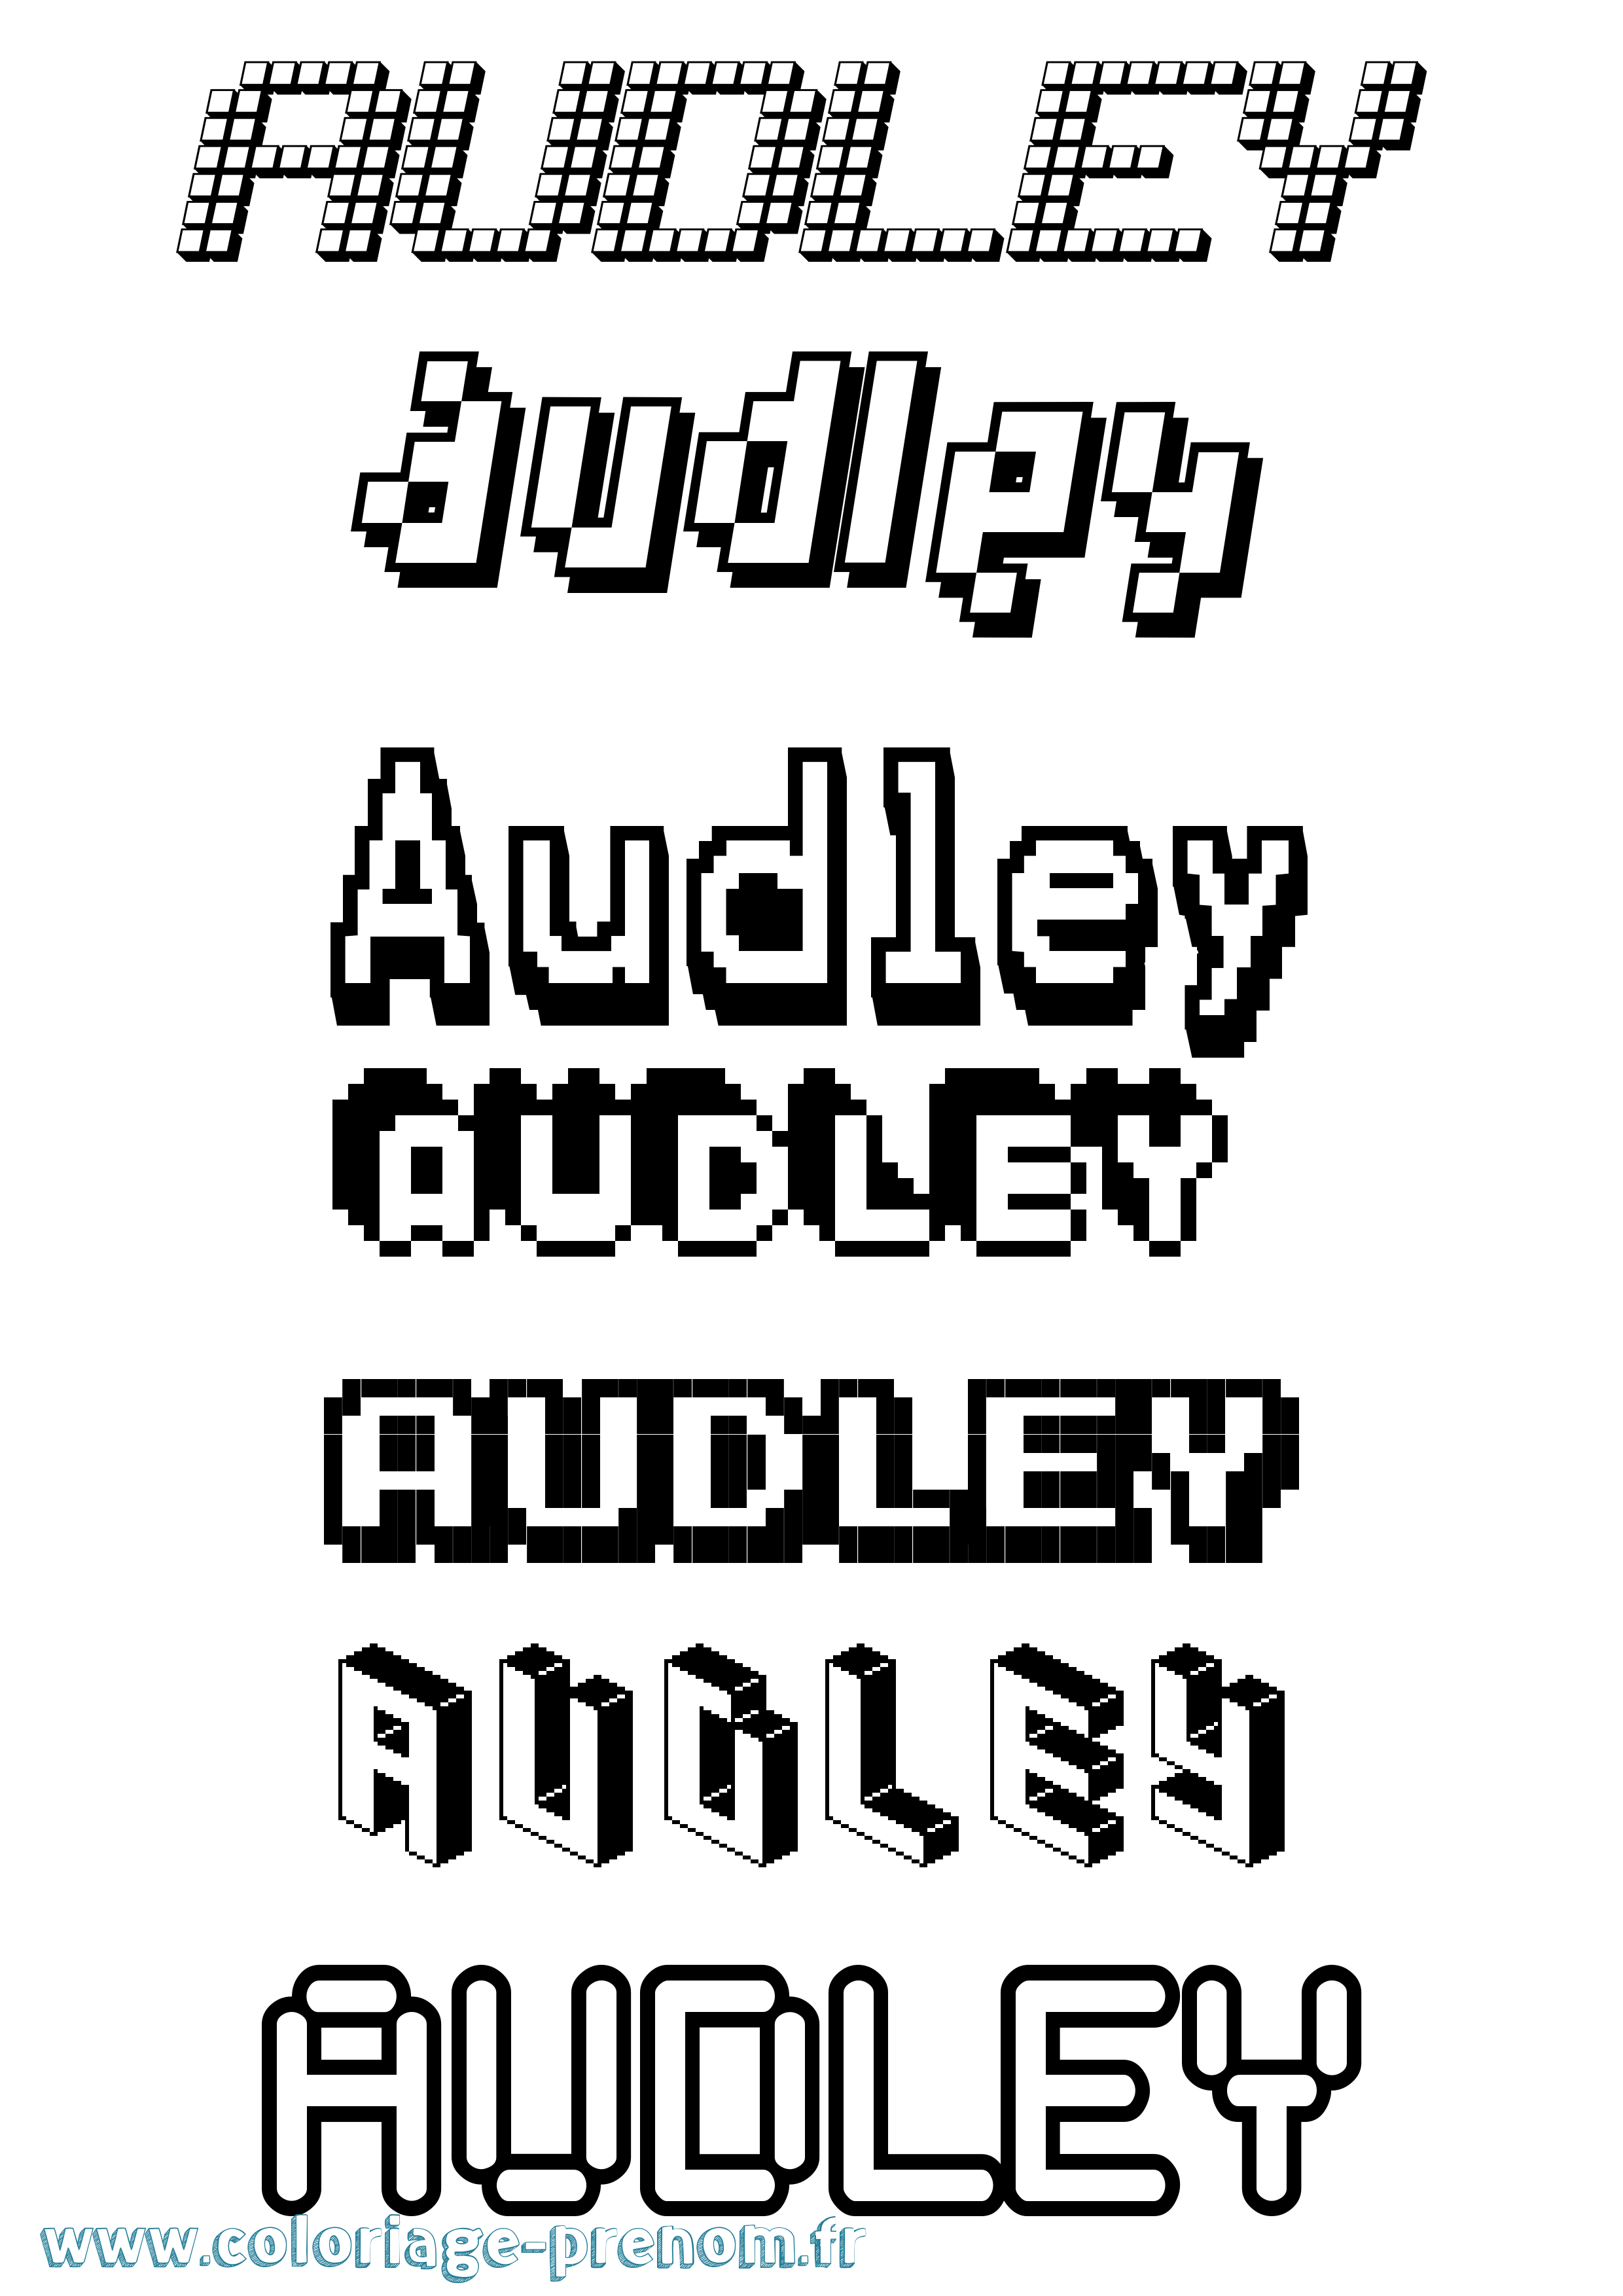 Coloriage prénom Audley Pixel